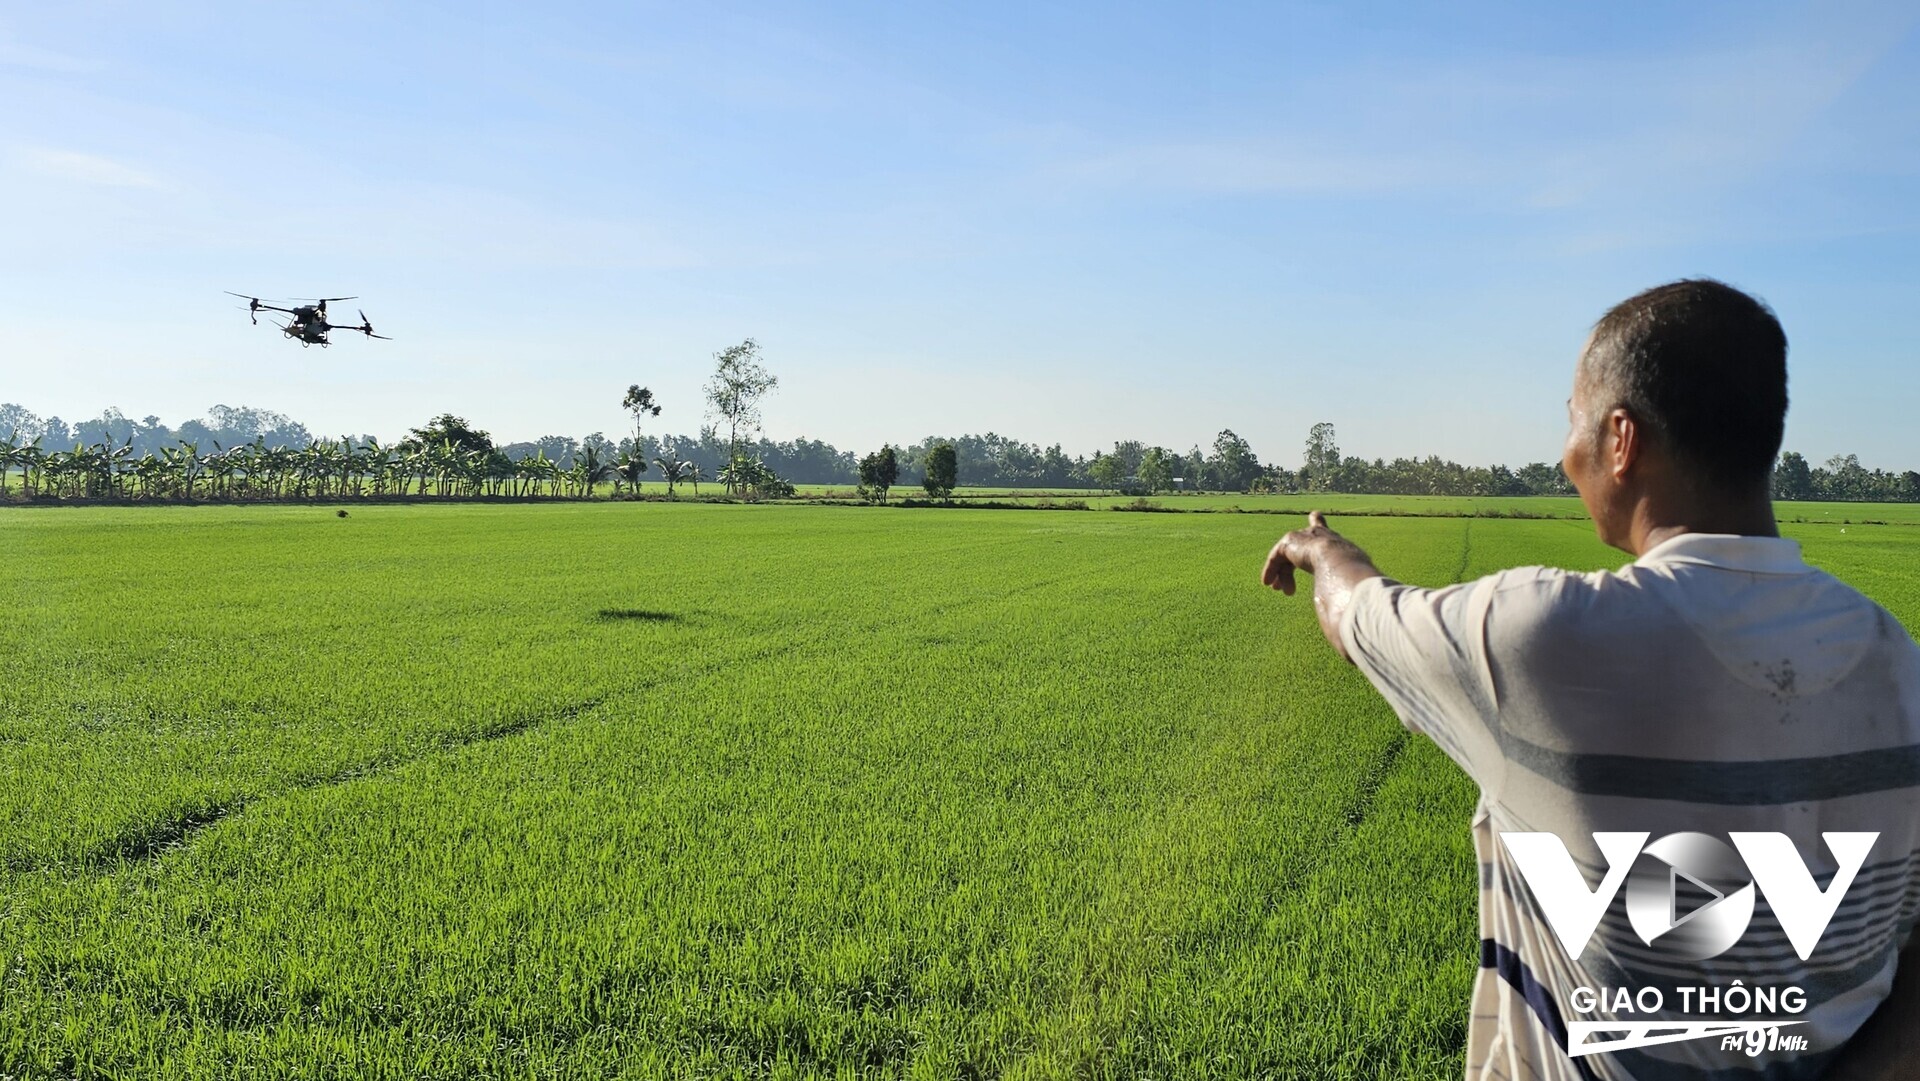 Ảnh: Ứng dụng máy móc vào canh tác lúa, giúp nông dân nhẹ công chăm sóc (Thanh Phê/Mekong FM)